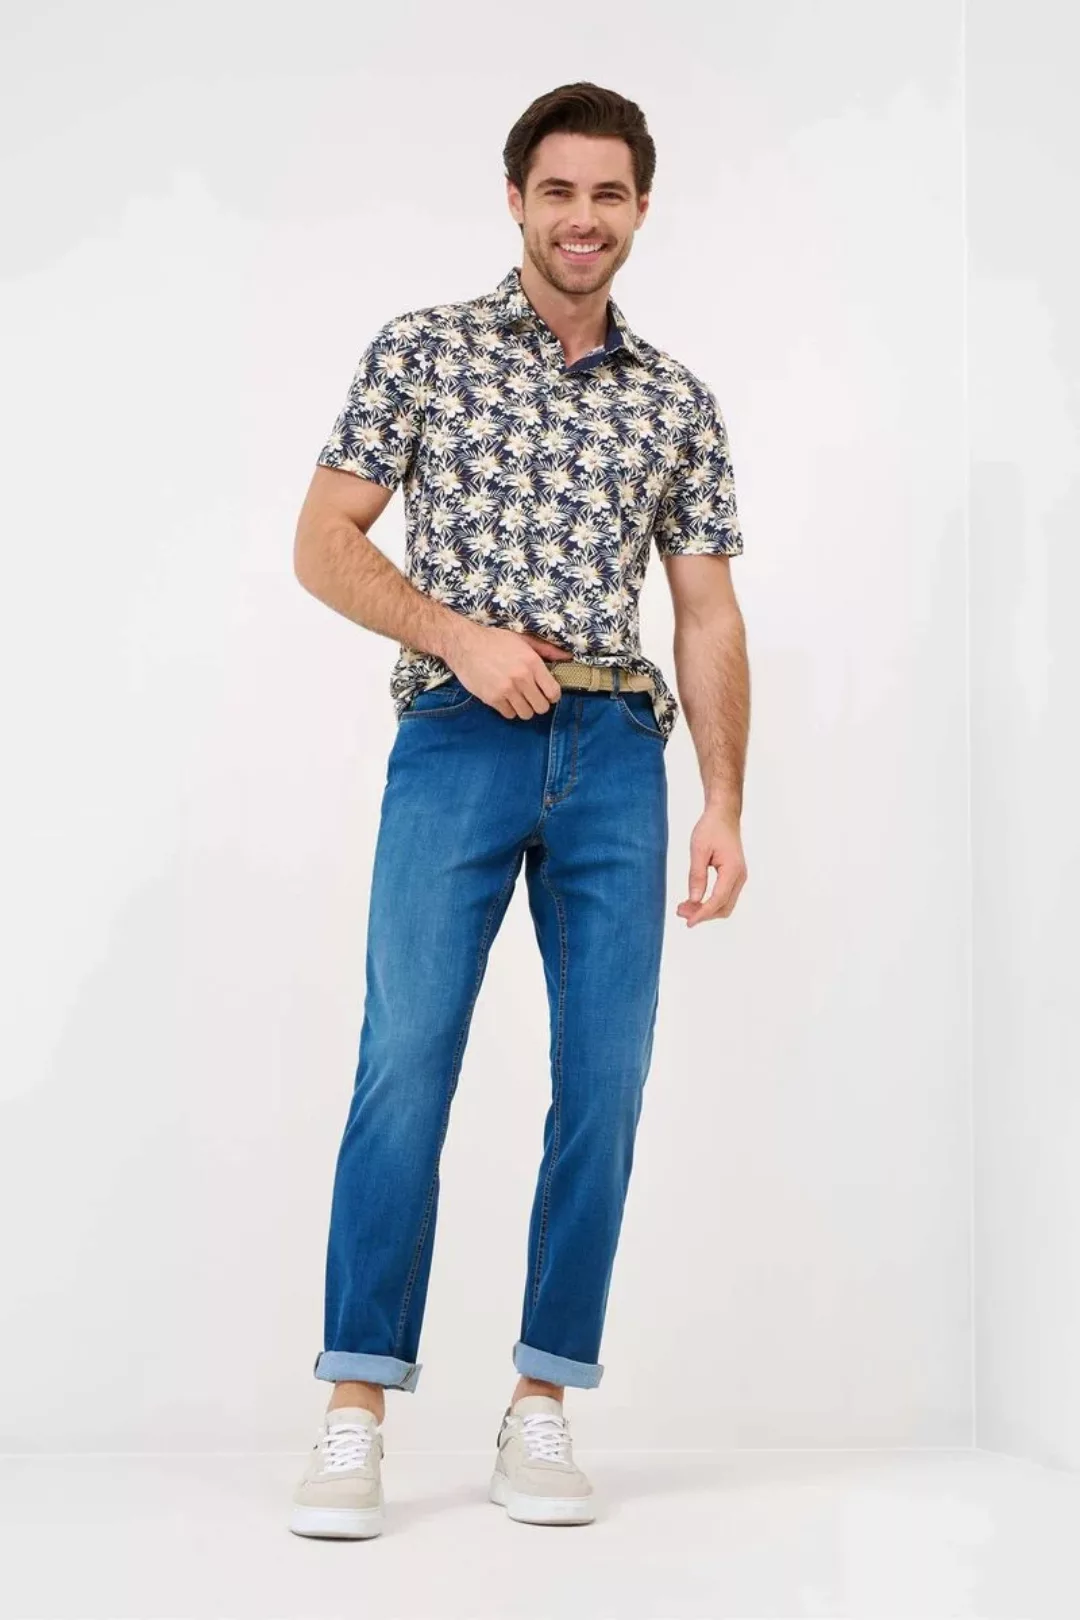 Brax Cooper Jeans Blau - Größe W 34 - L 34 günstig online kaufen